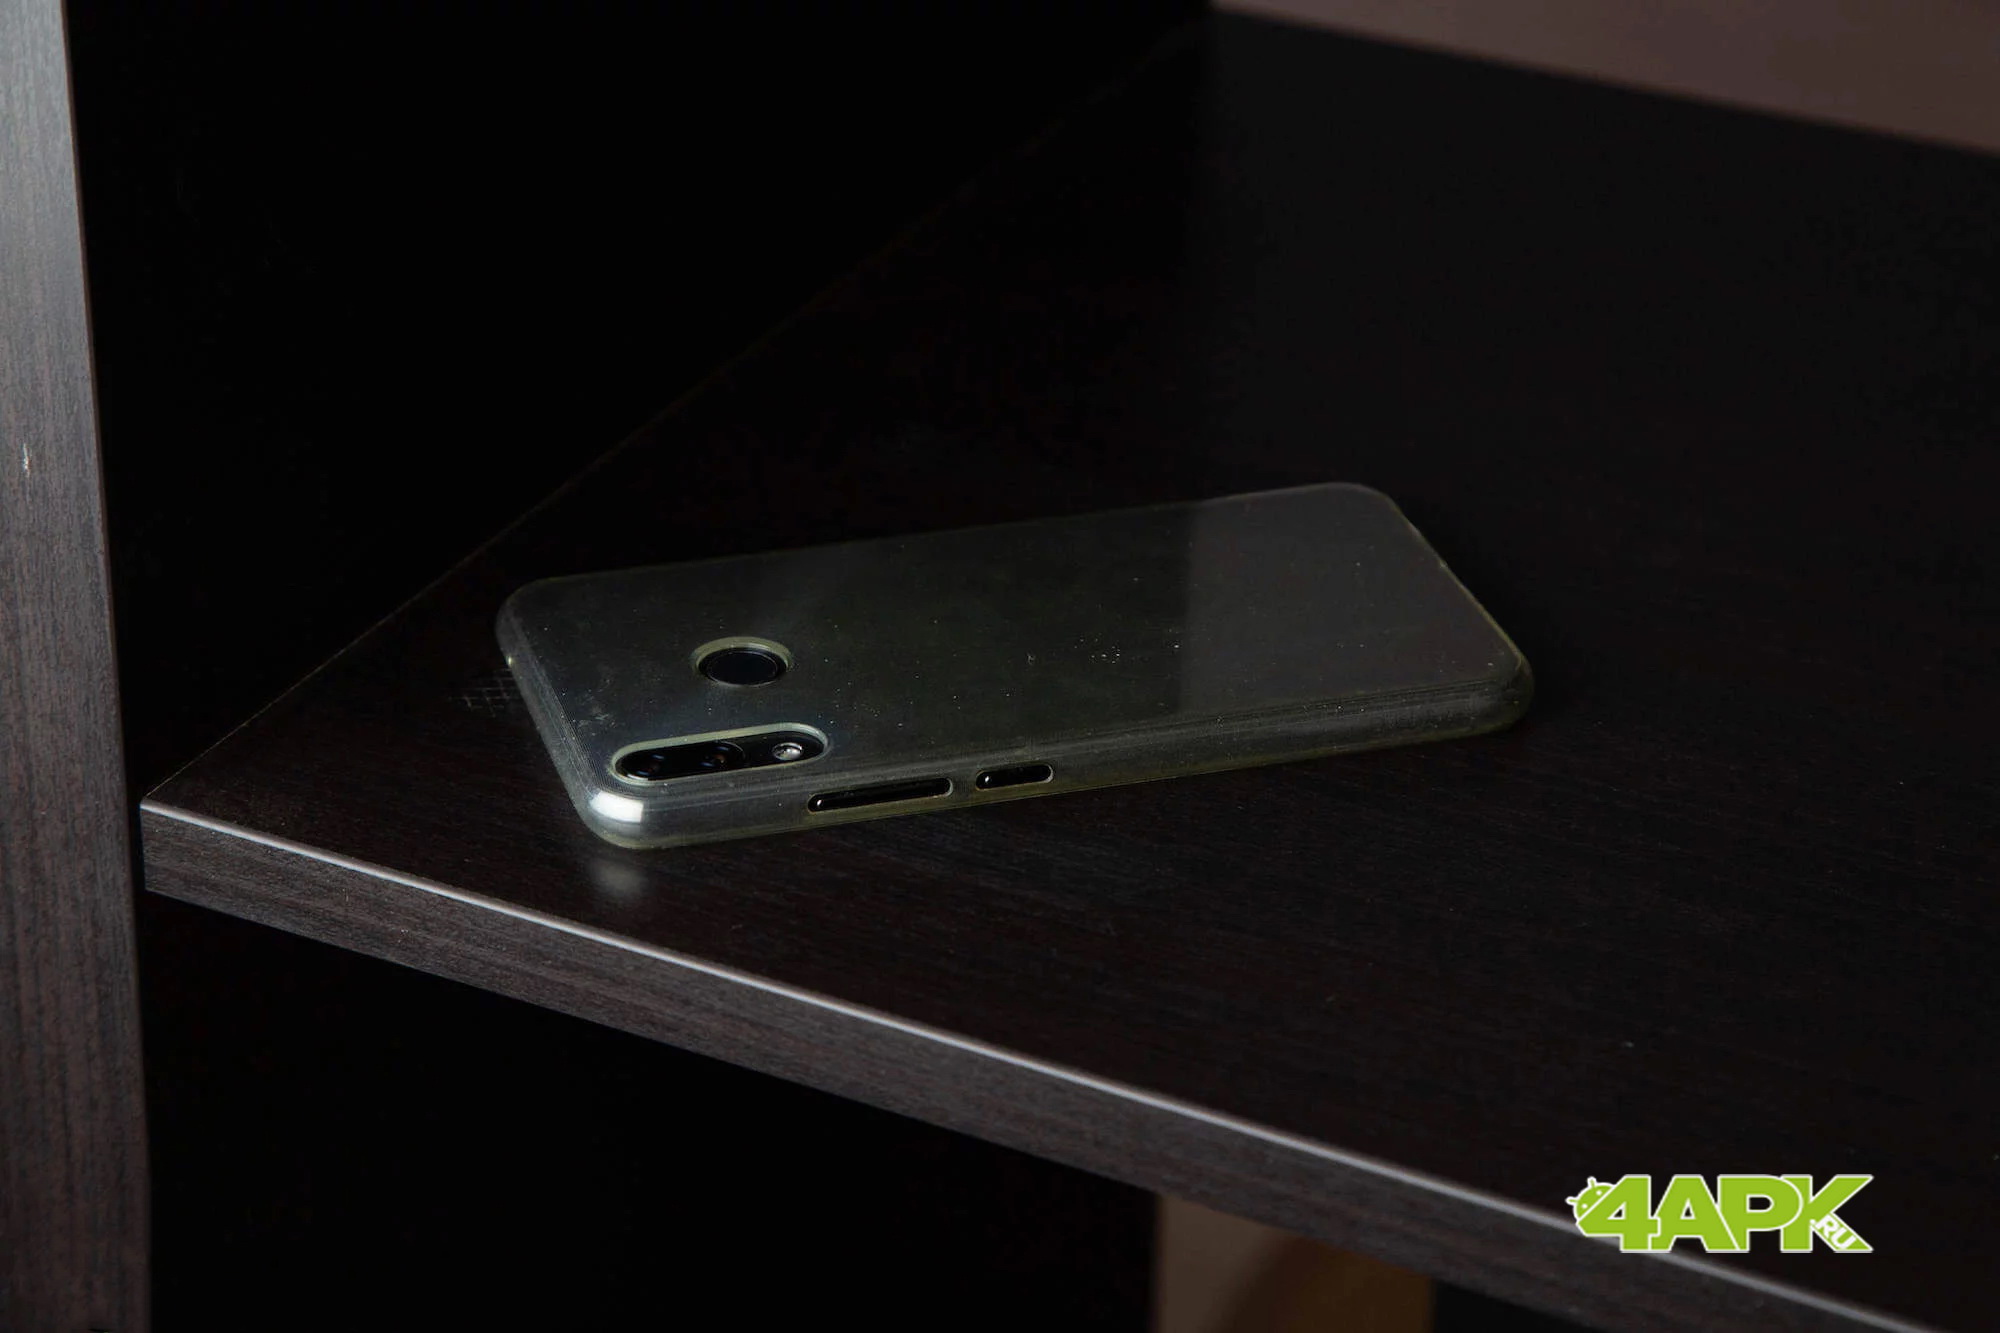  Быстрый обзор ASUS Zenfone 5: недорогой, но хороший смартфон Другие устройства  - 5DM36098-1